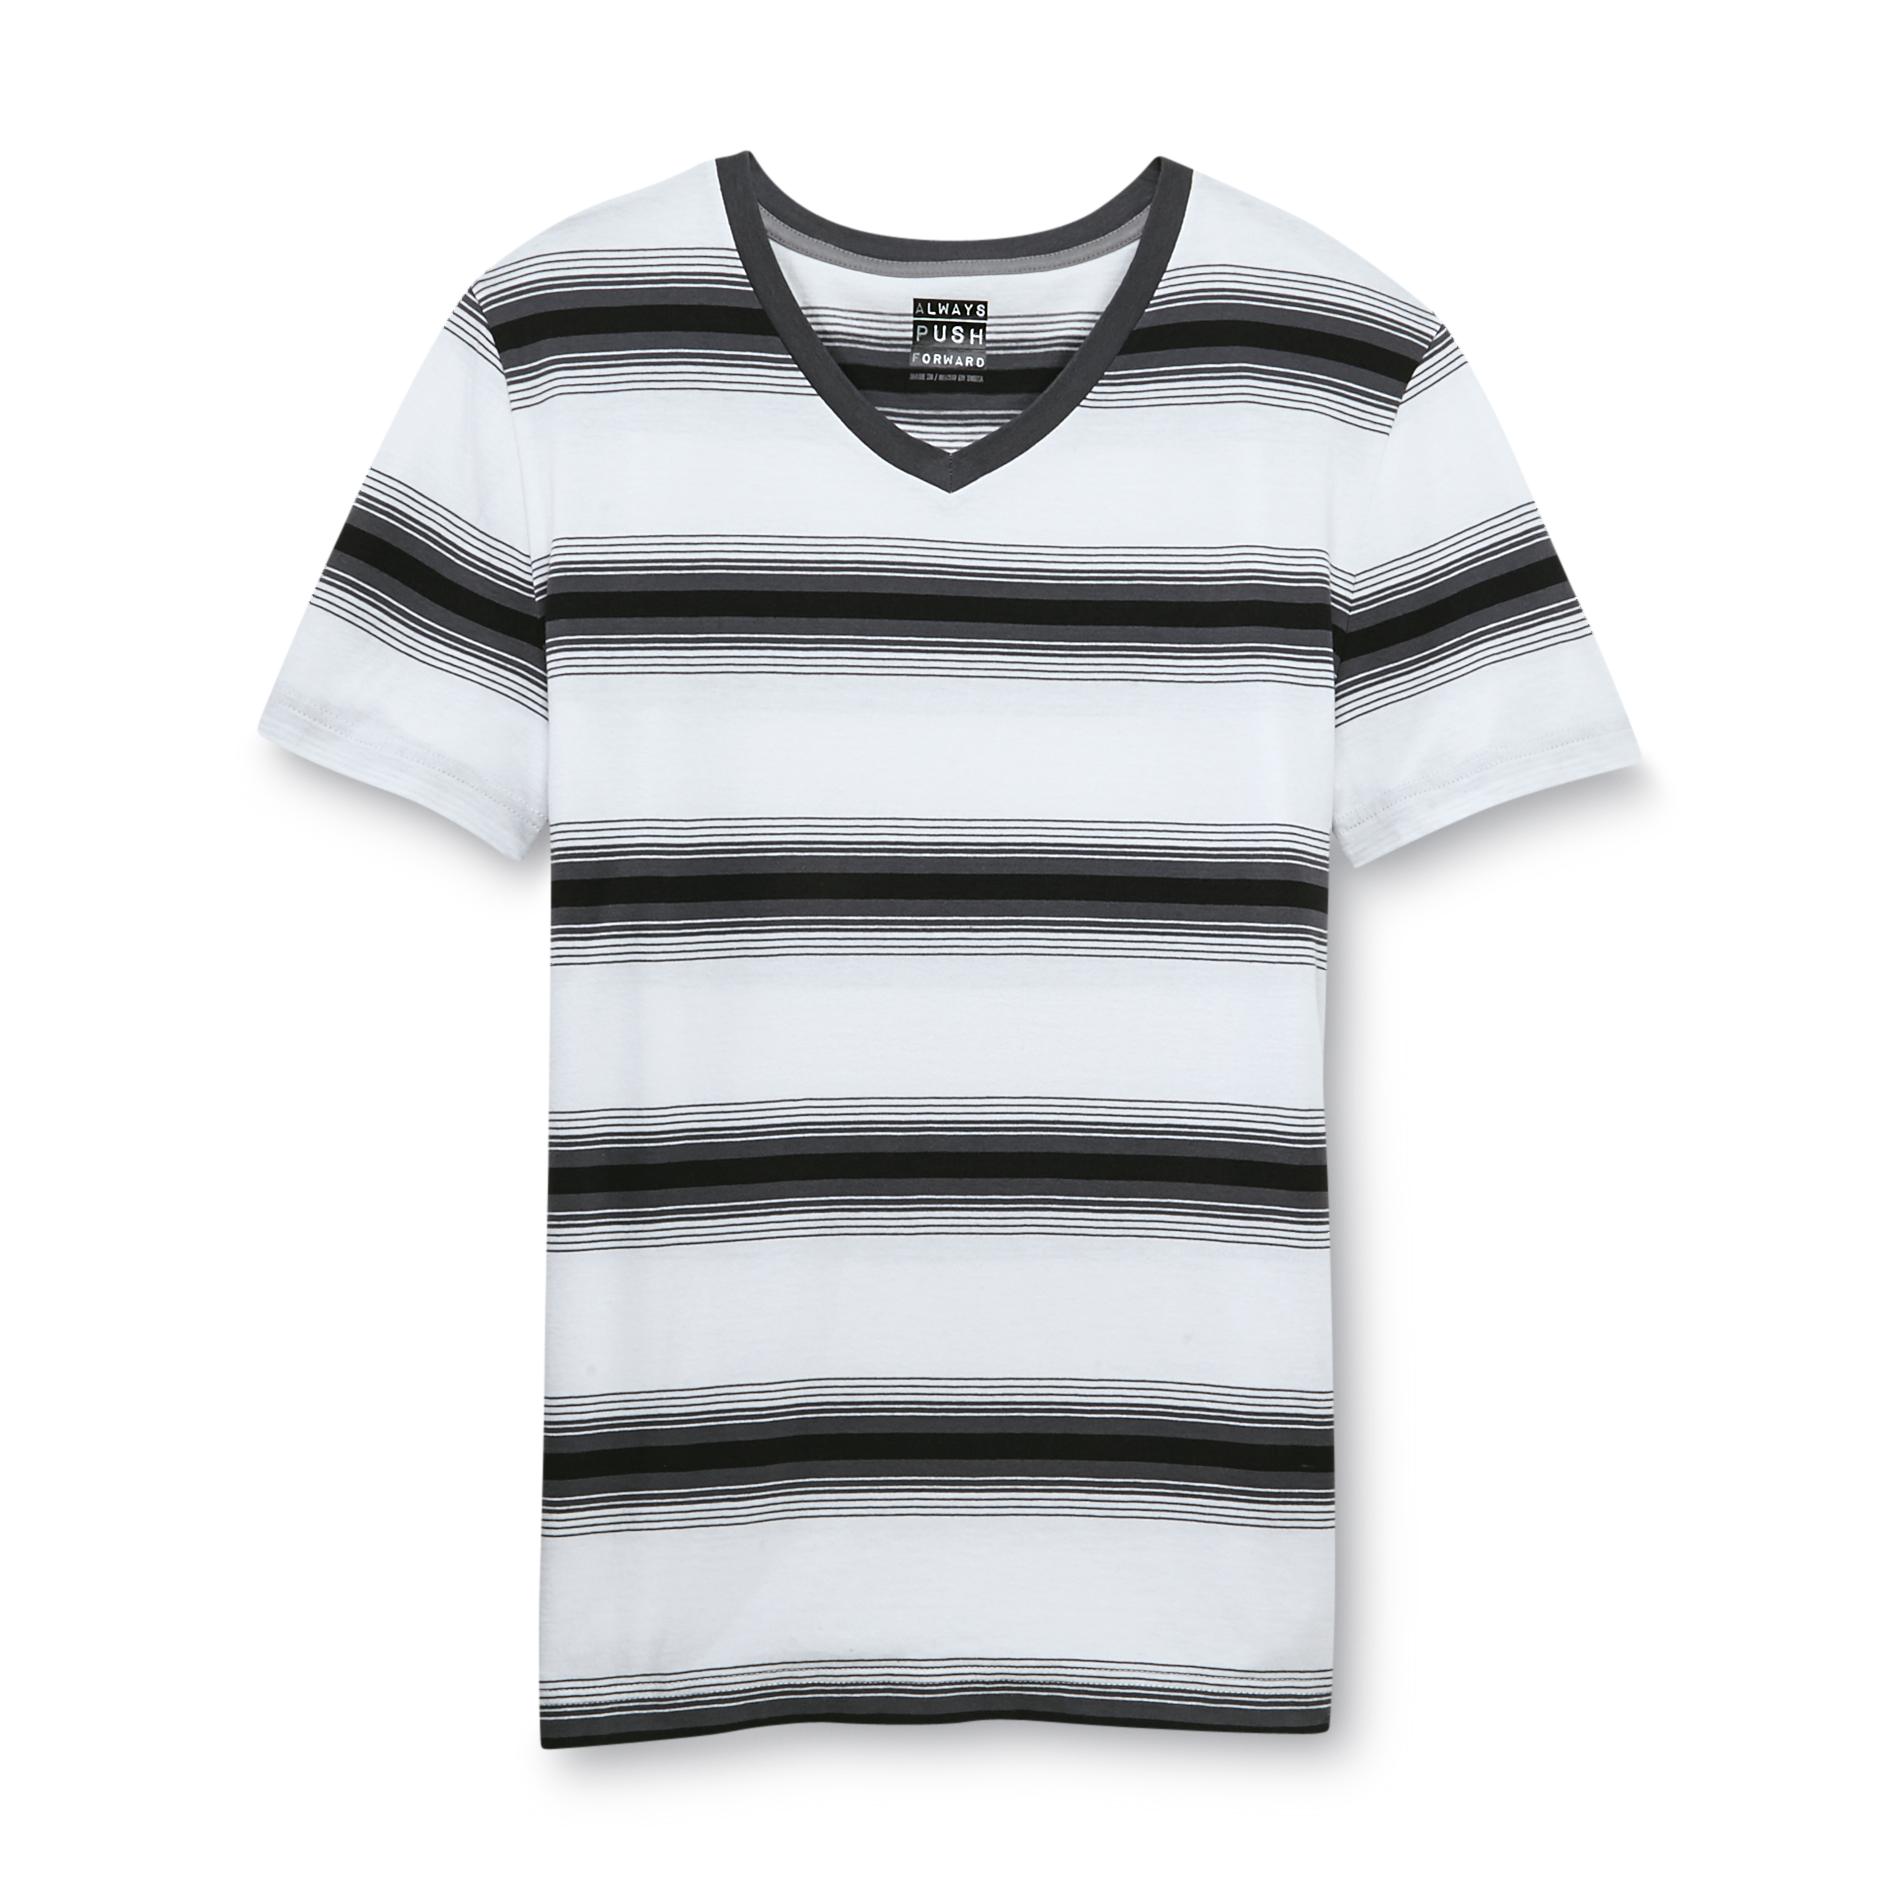 Always Push Forward Men's V-Neck T-Shirt - Striped